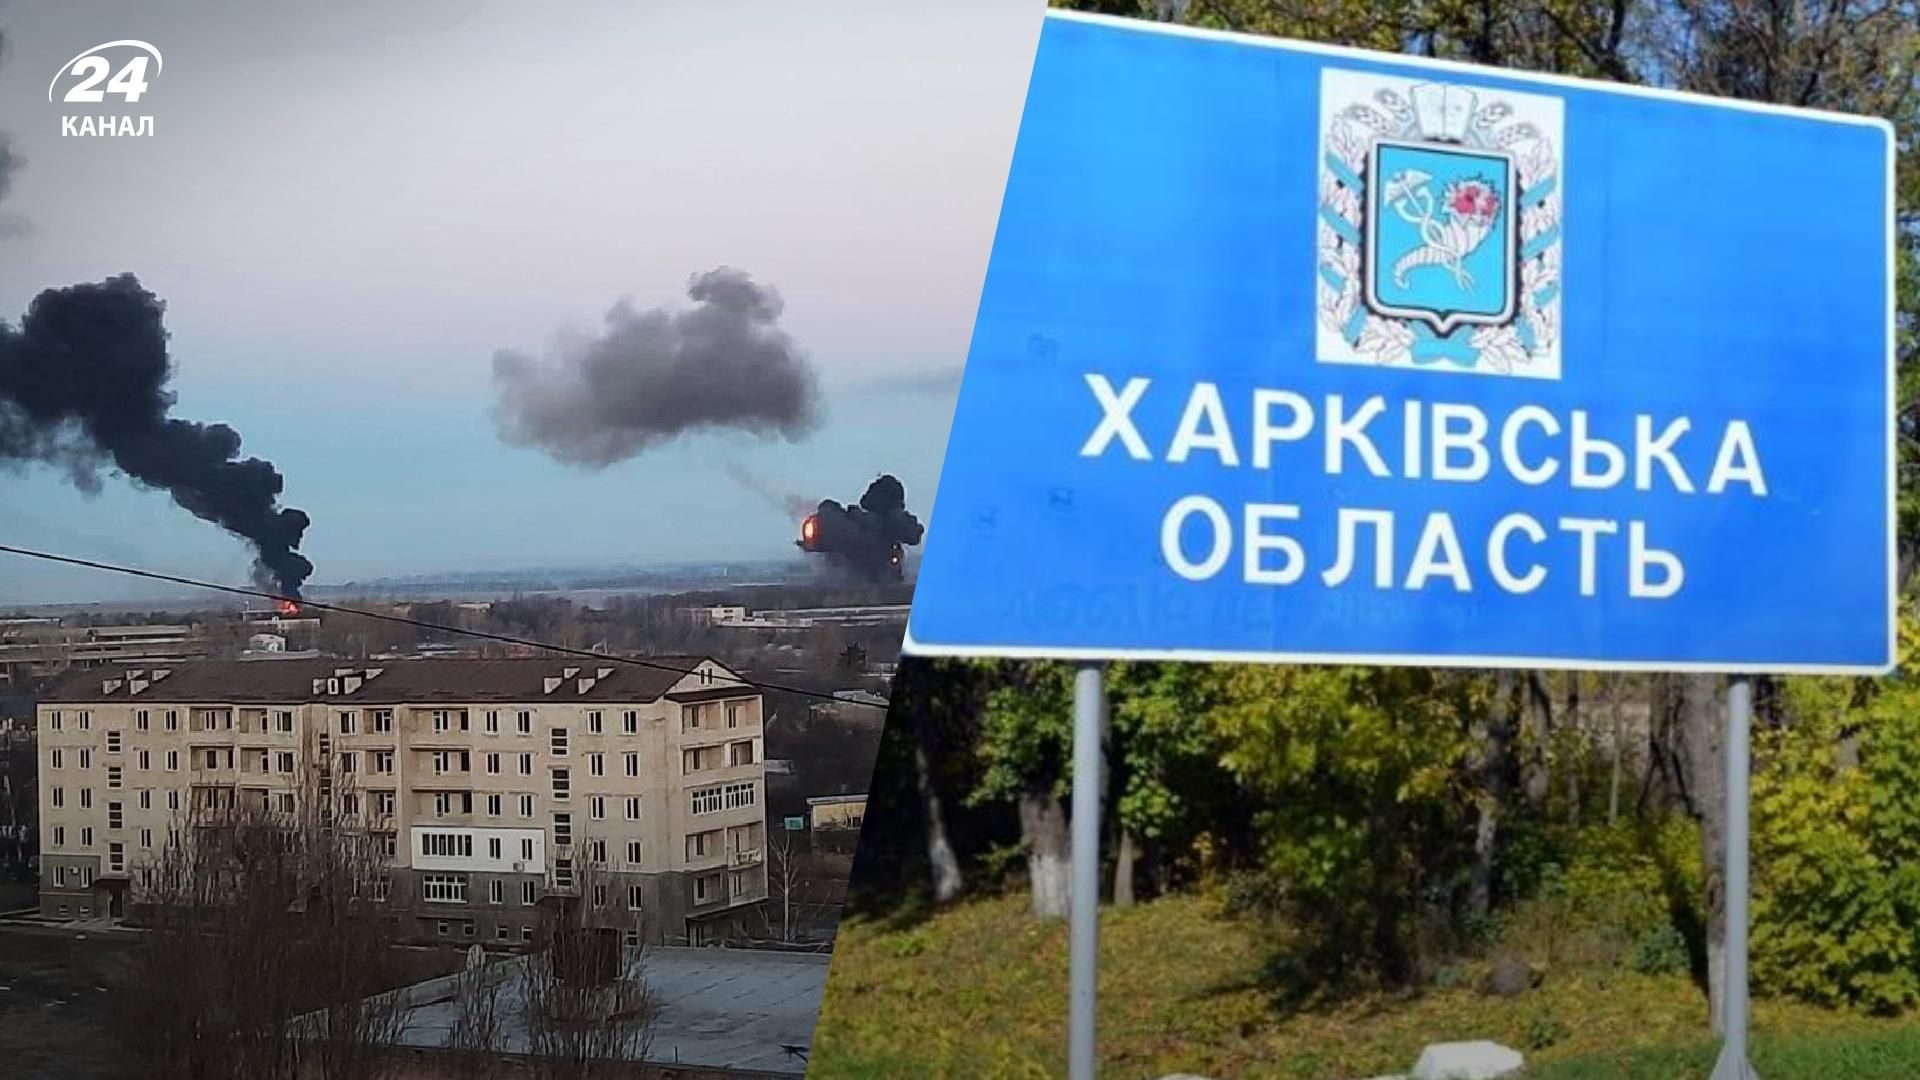 В Харькове прогремели взрывы горожан призывают не покидать укрытий - 24 Каналл